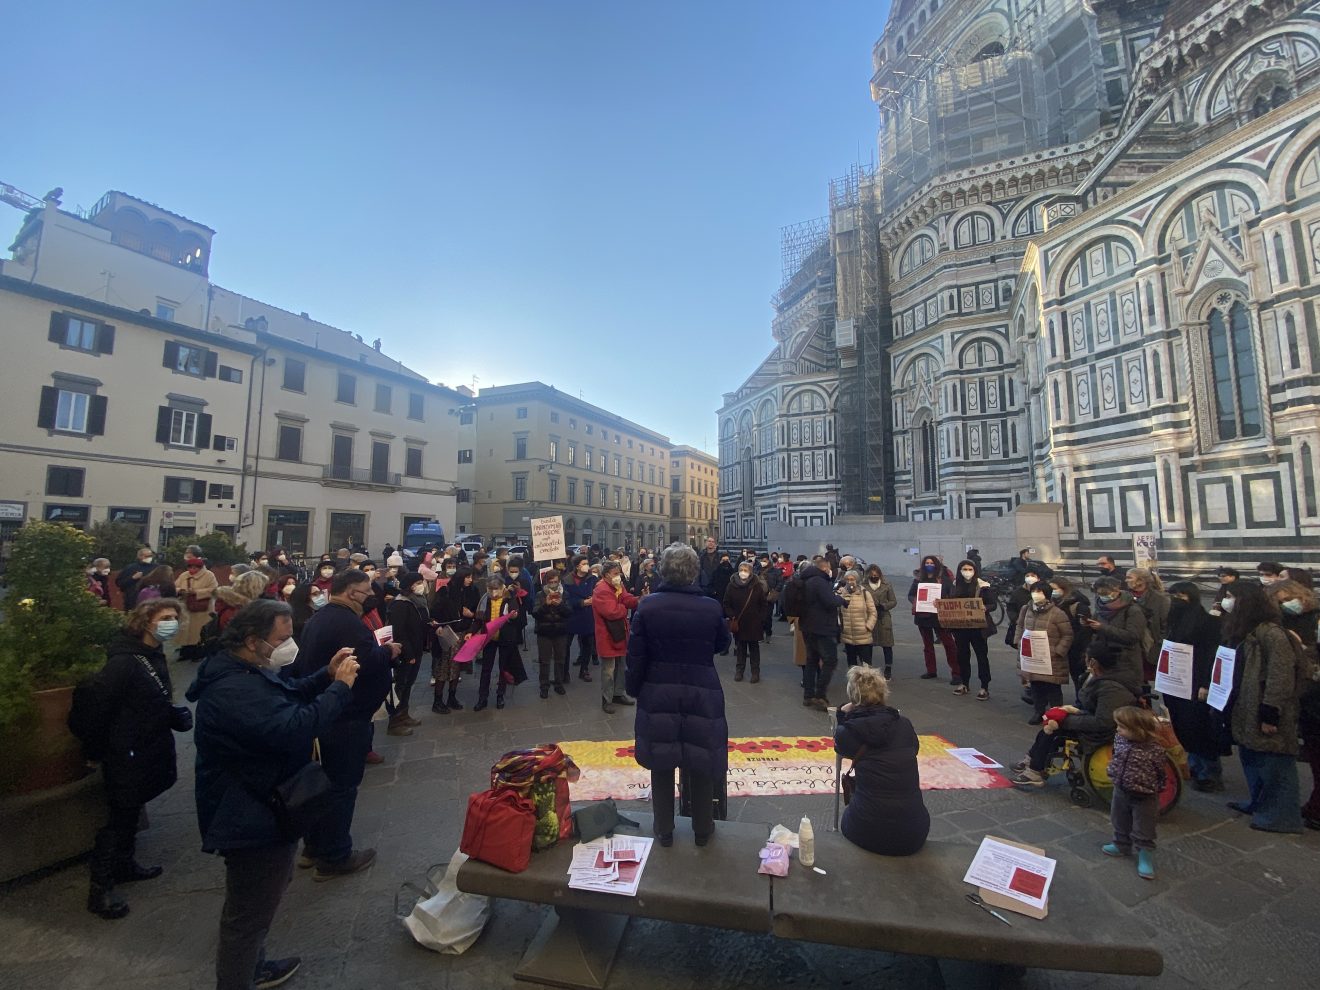 “Legge 194, Toscana inadempiente”, il presidio a Firenze (foto)